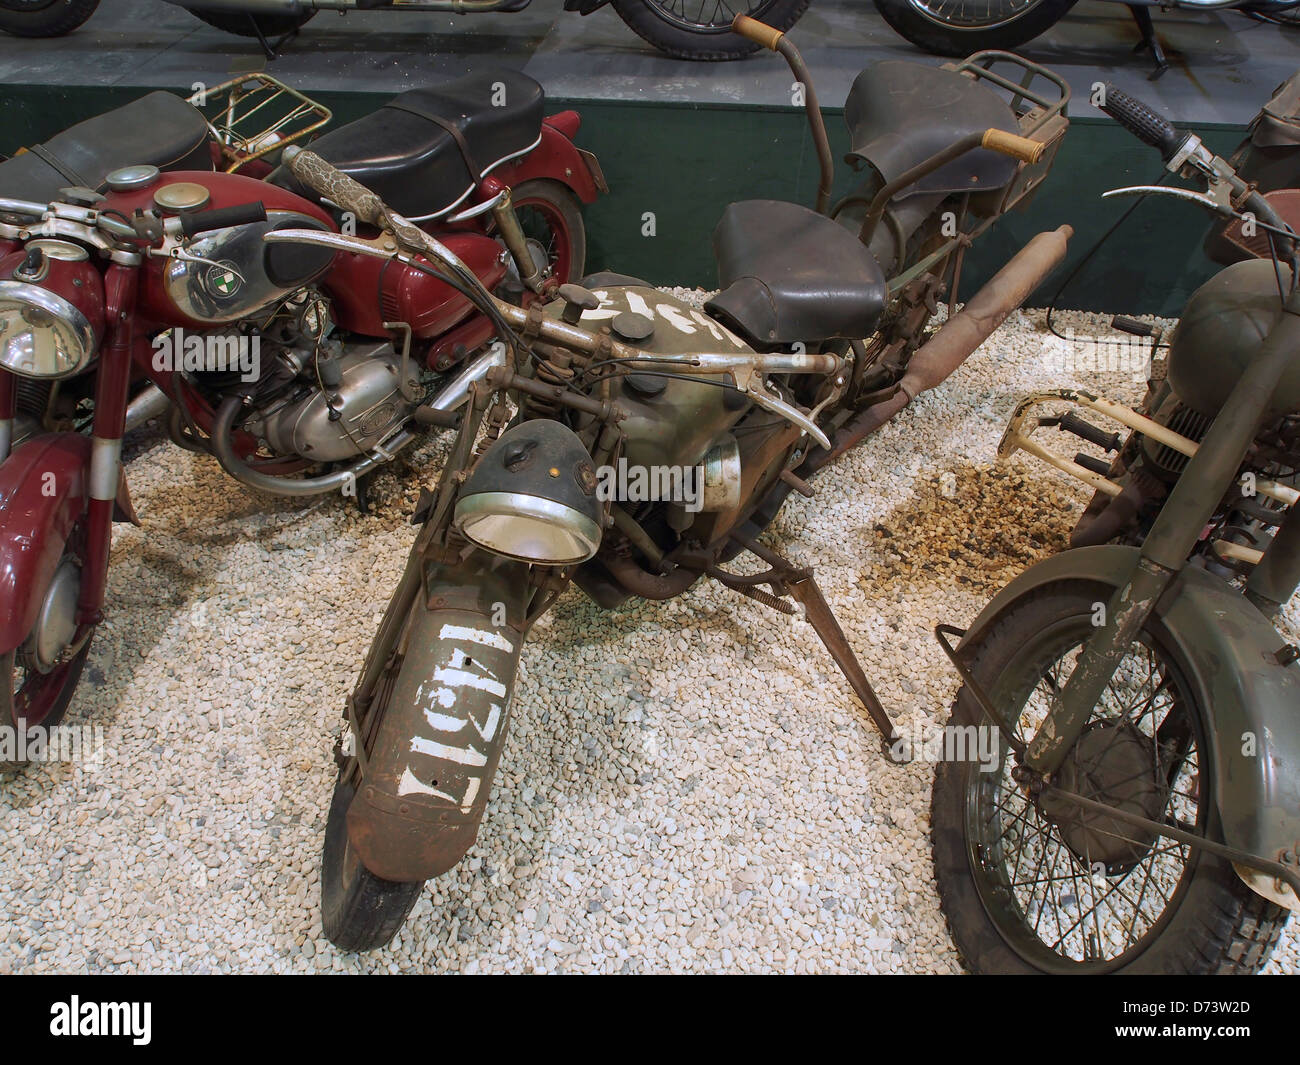 1939 Moto Guzzi Alce Motorcycle pic1. Stock Photo